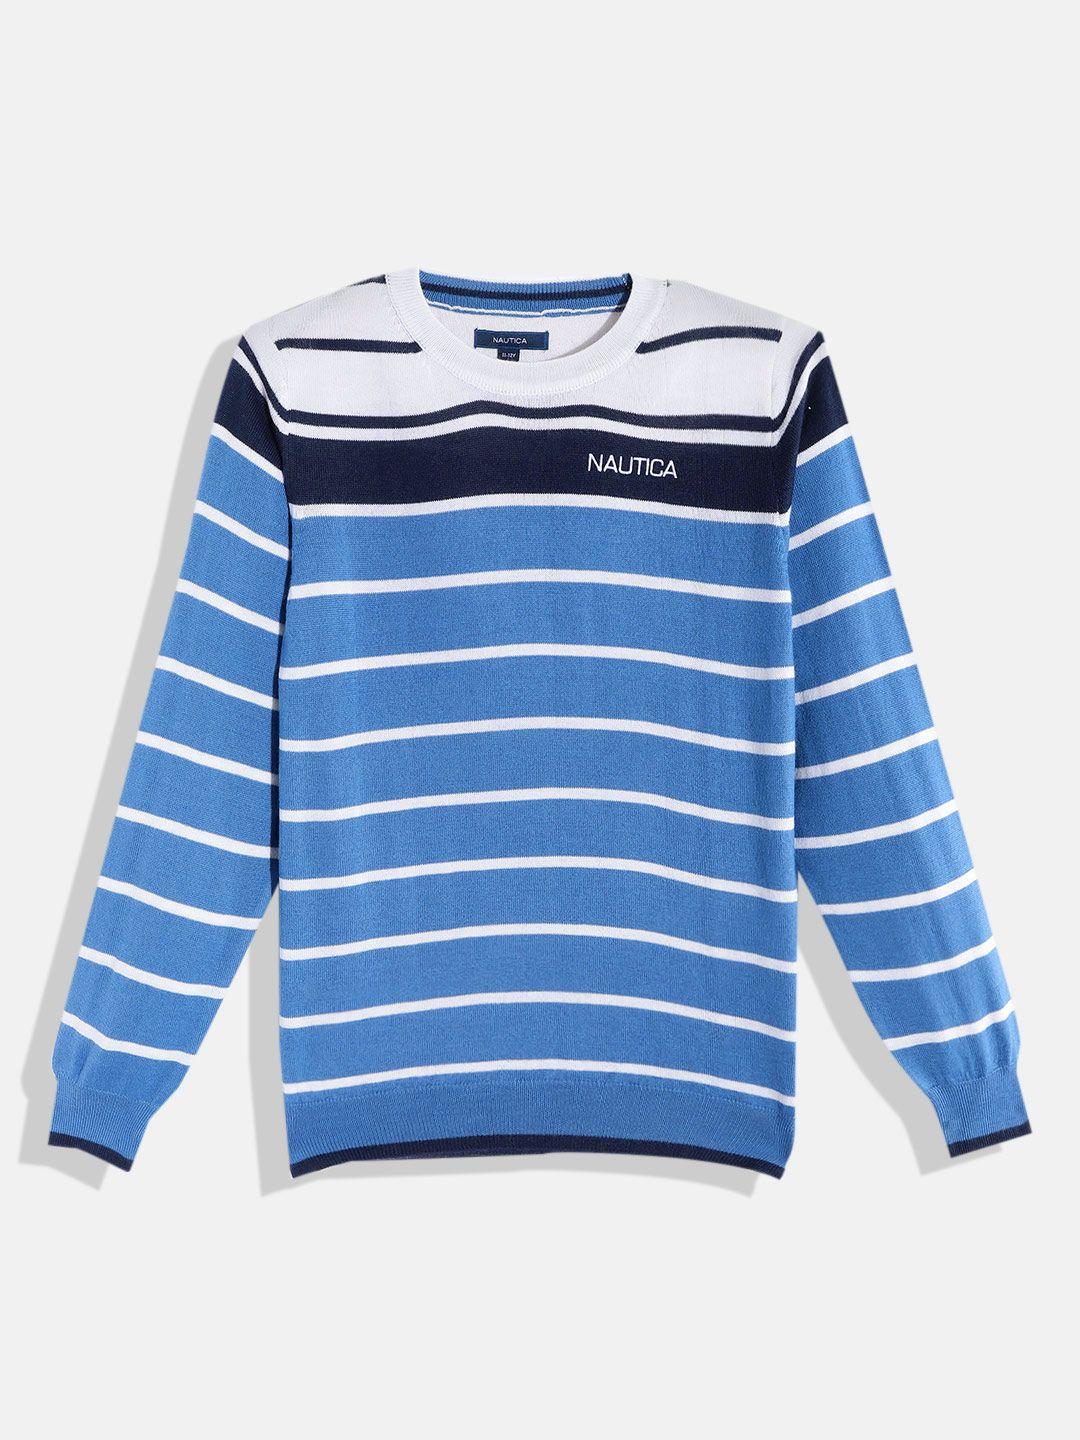 nautica-boys-blue-&-white-striped-round-neck-pullover